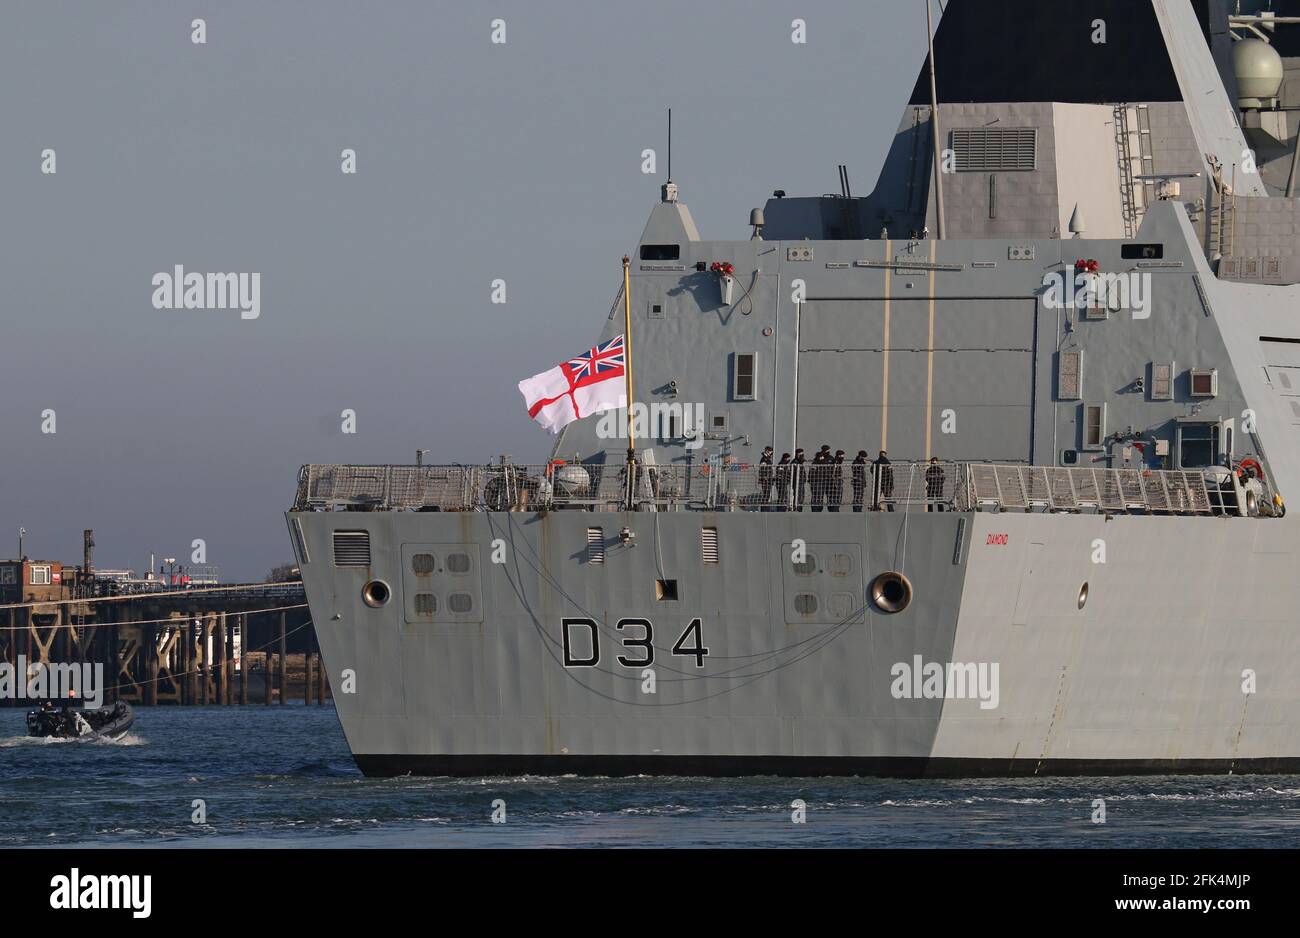 El cartel blanco del buque de la Royal Navy HMS DIAMOND vuela a media asta marcando el período oficial de luto para el príncipe Felipe, duque de Edimburgo Foto de stock